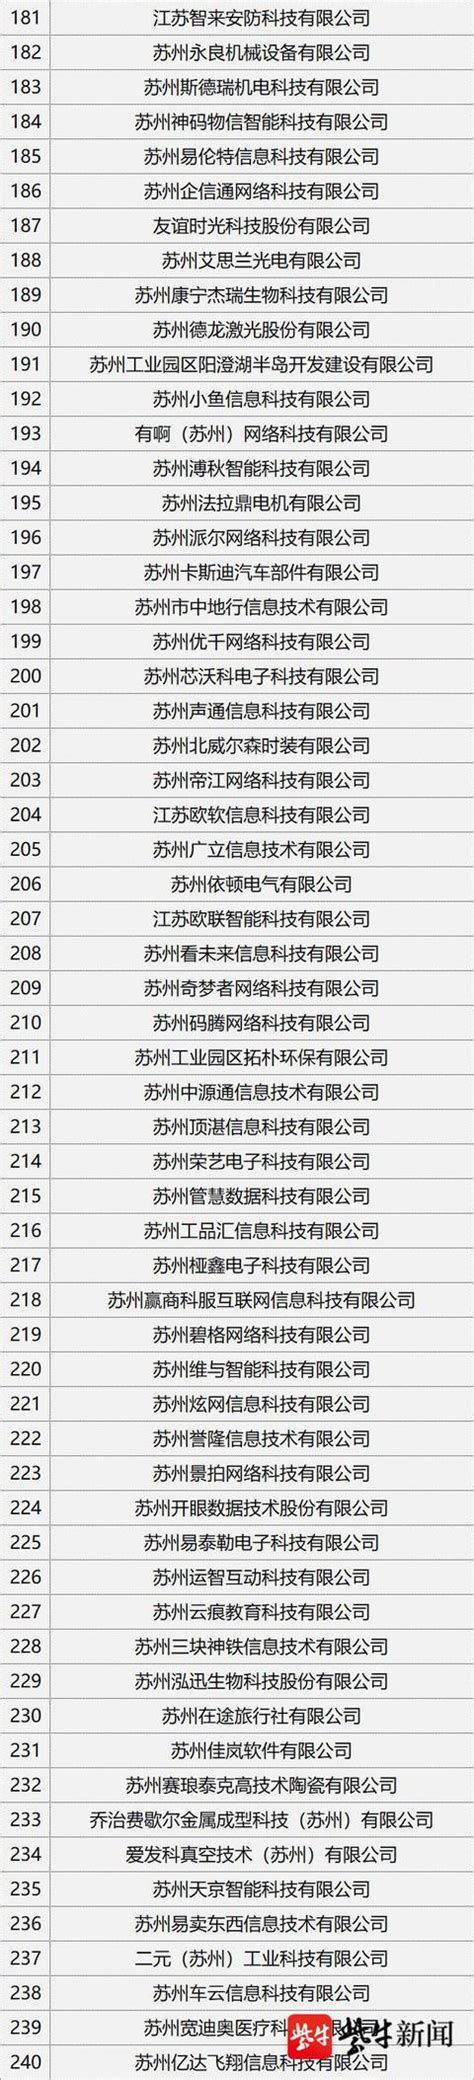 苏州十大设计公司排名-金螳螂GOLDMANTiS上榜(获奖众多)-排行榜123网